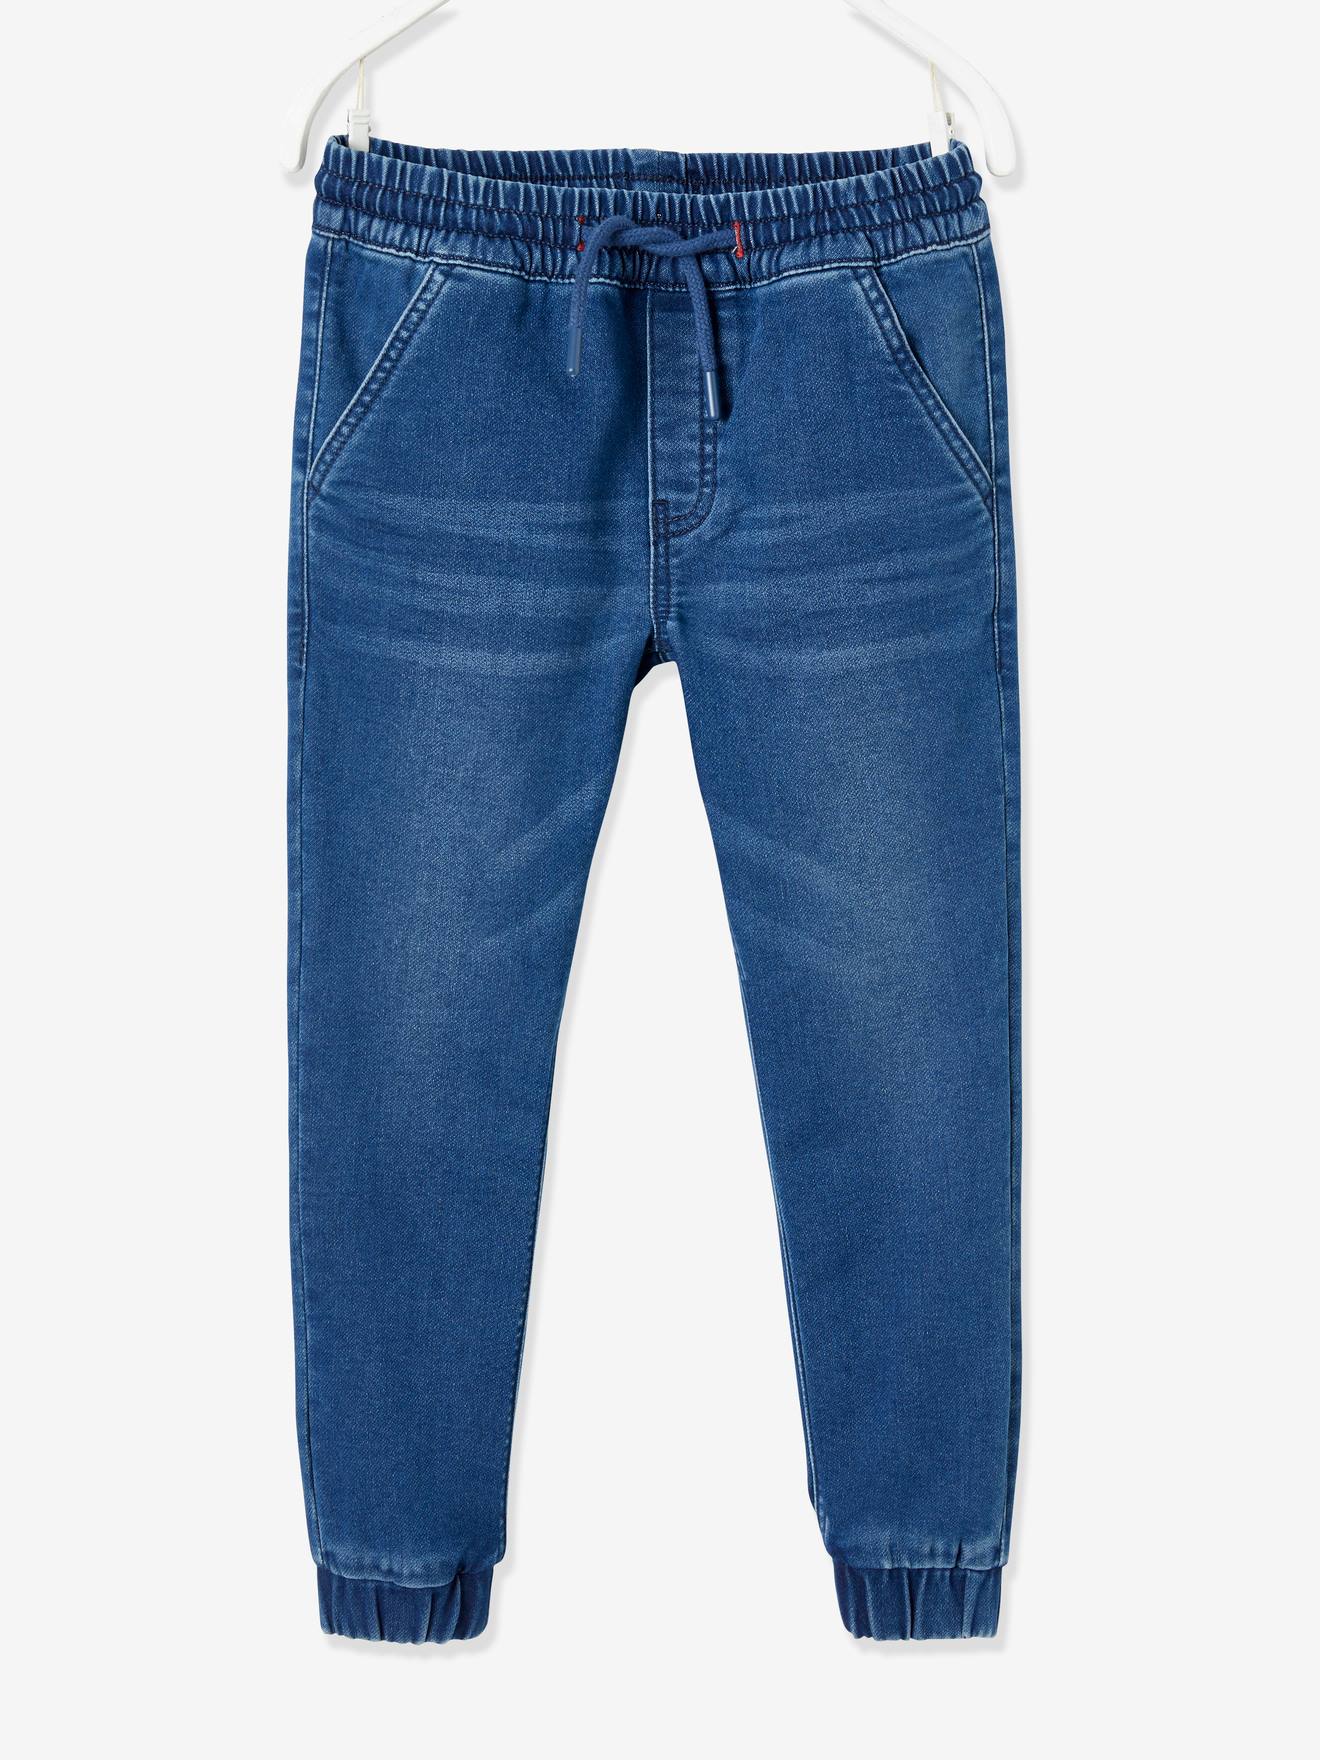 Whoopi lange Hose Jeans verstellbare Länge blau Jungen Gr.74,80,98 